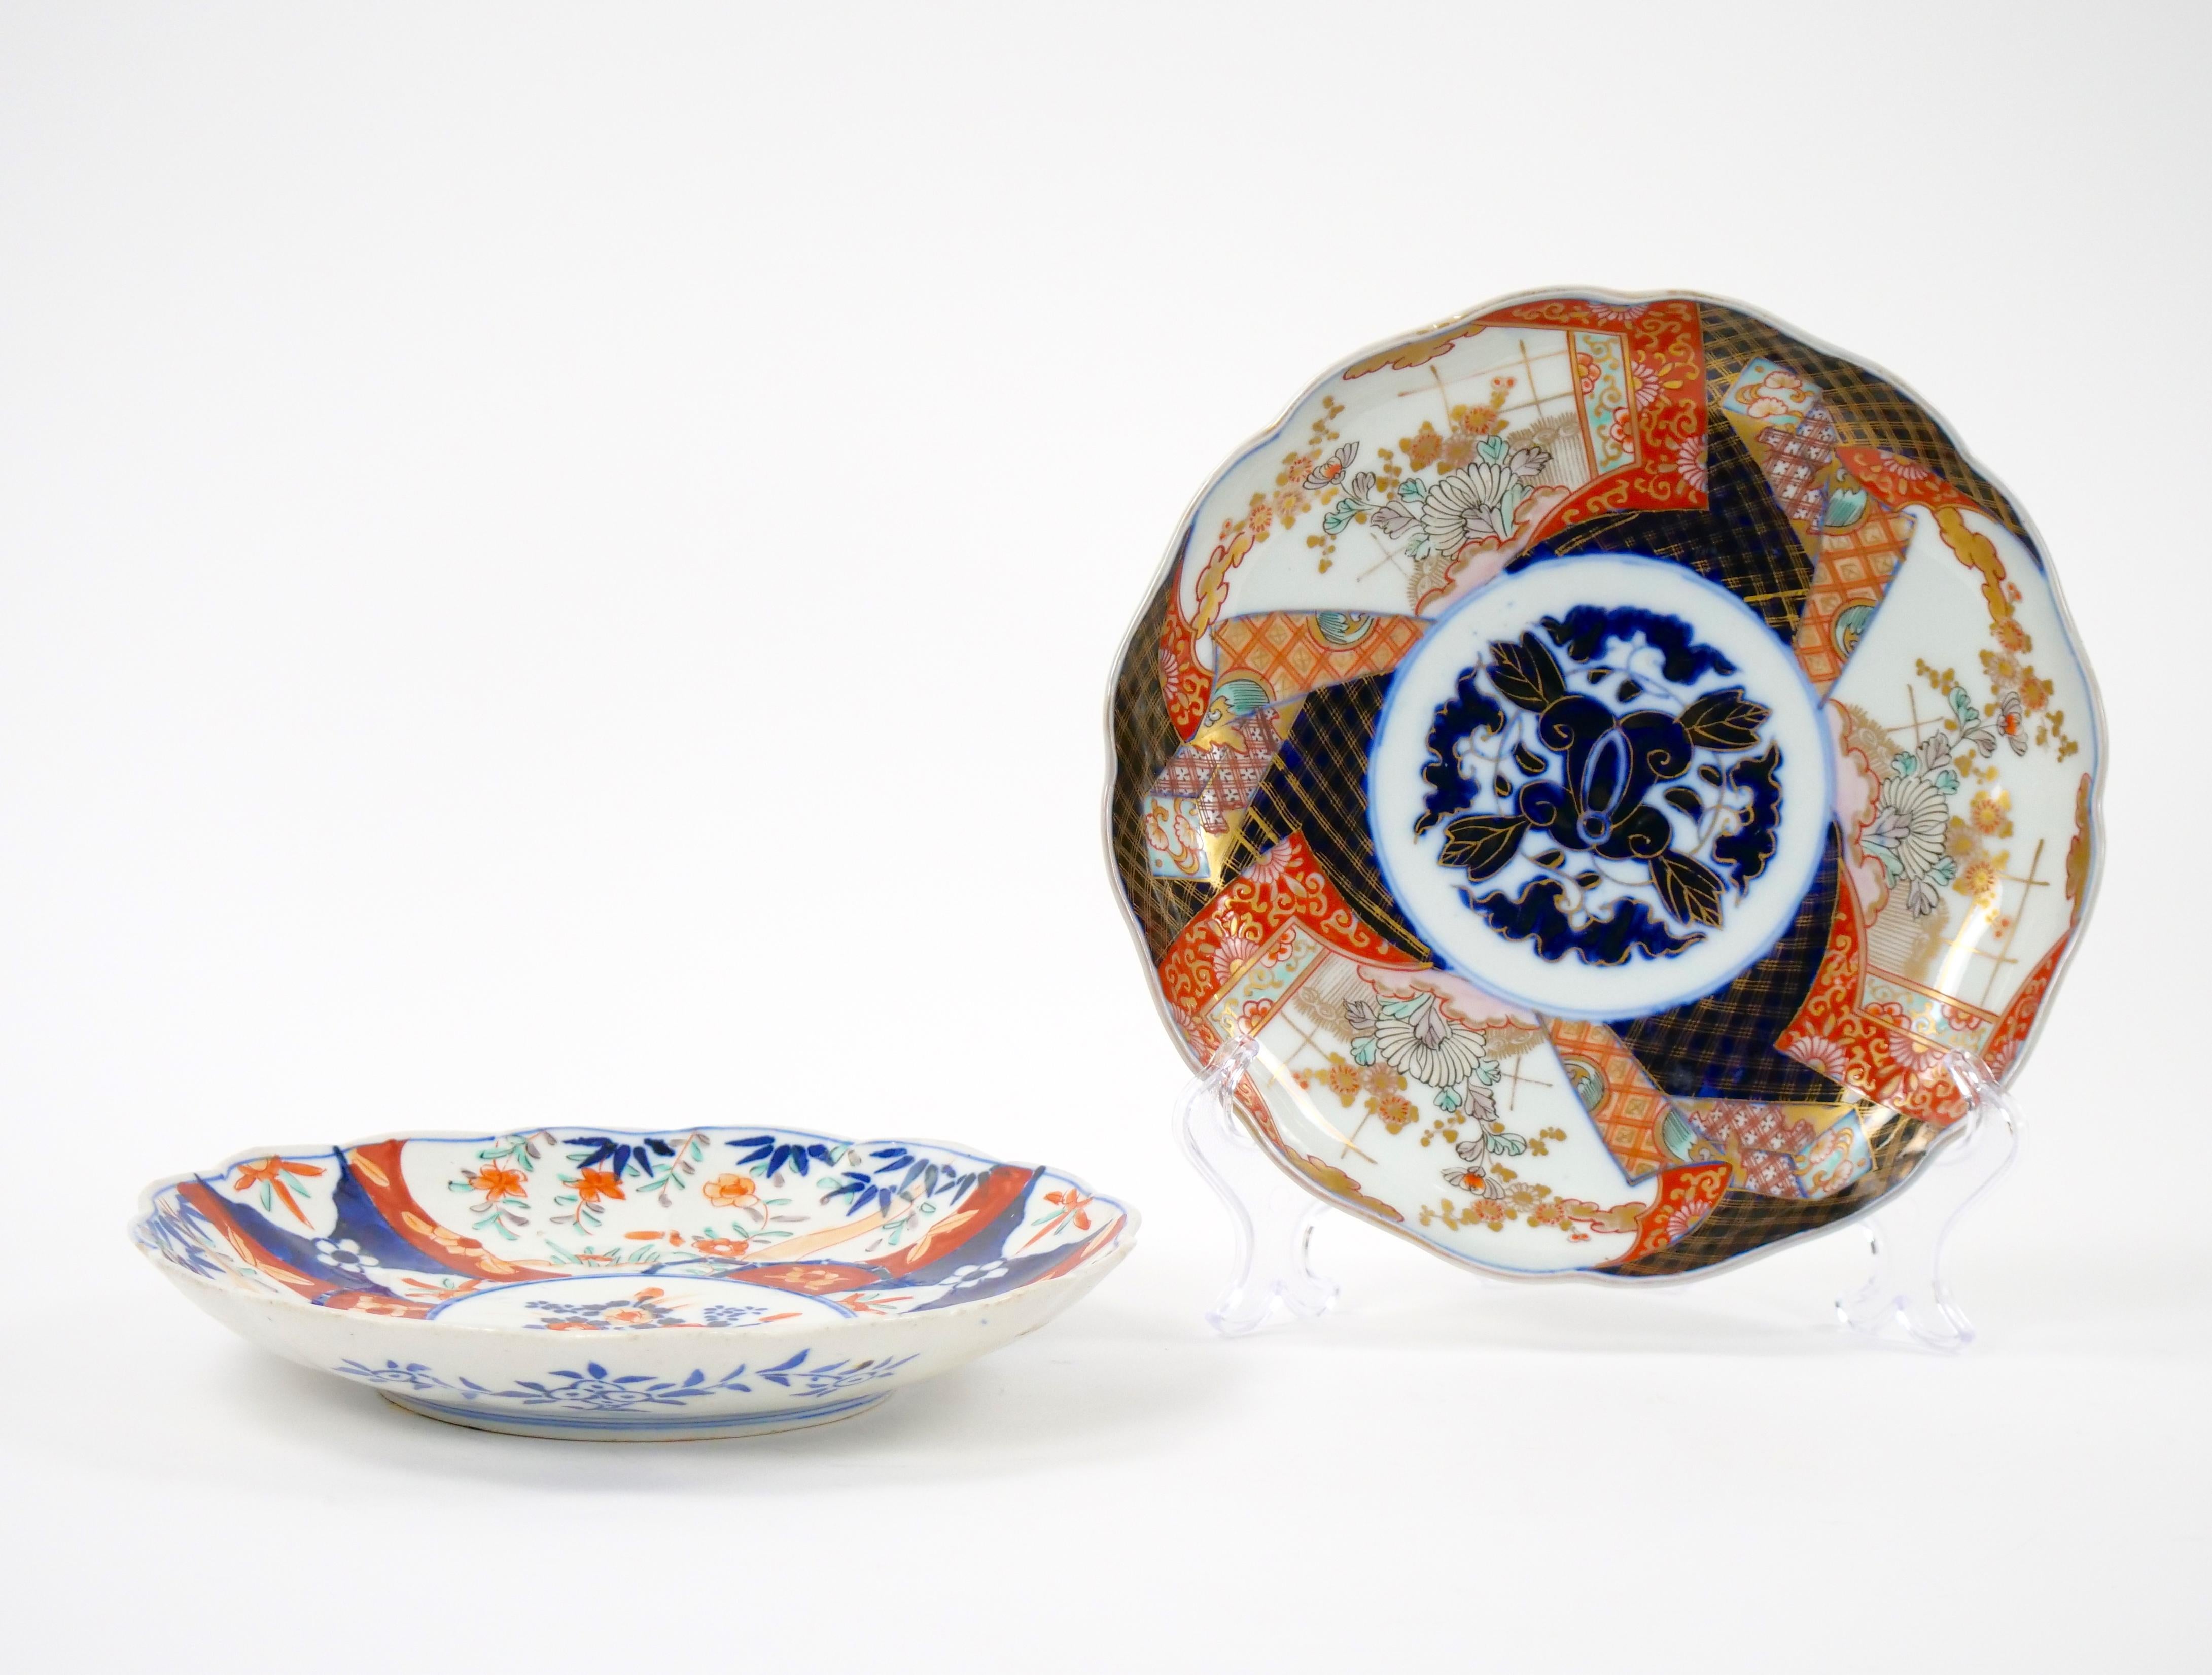 Machen Sie eine Zeitreise ins 19. Jahrhundert mit diesem bezaubernden Paar dekorativer Teller aus chinesischem Exportporzellan von Imari. Diese Teller verkörpern die Essenz einer vergangenen Ära, in der die Kunstfertigkeit des chinesischen